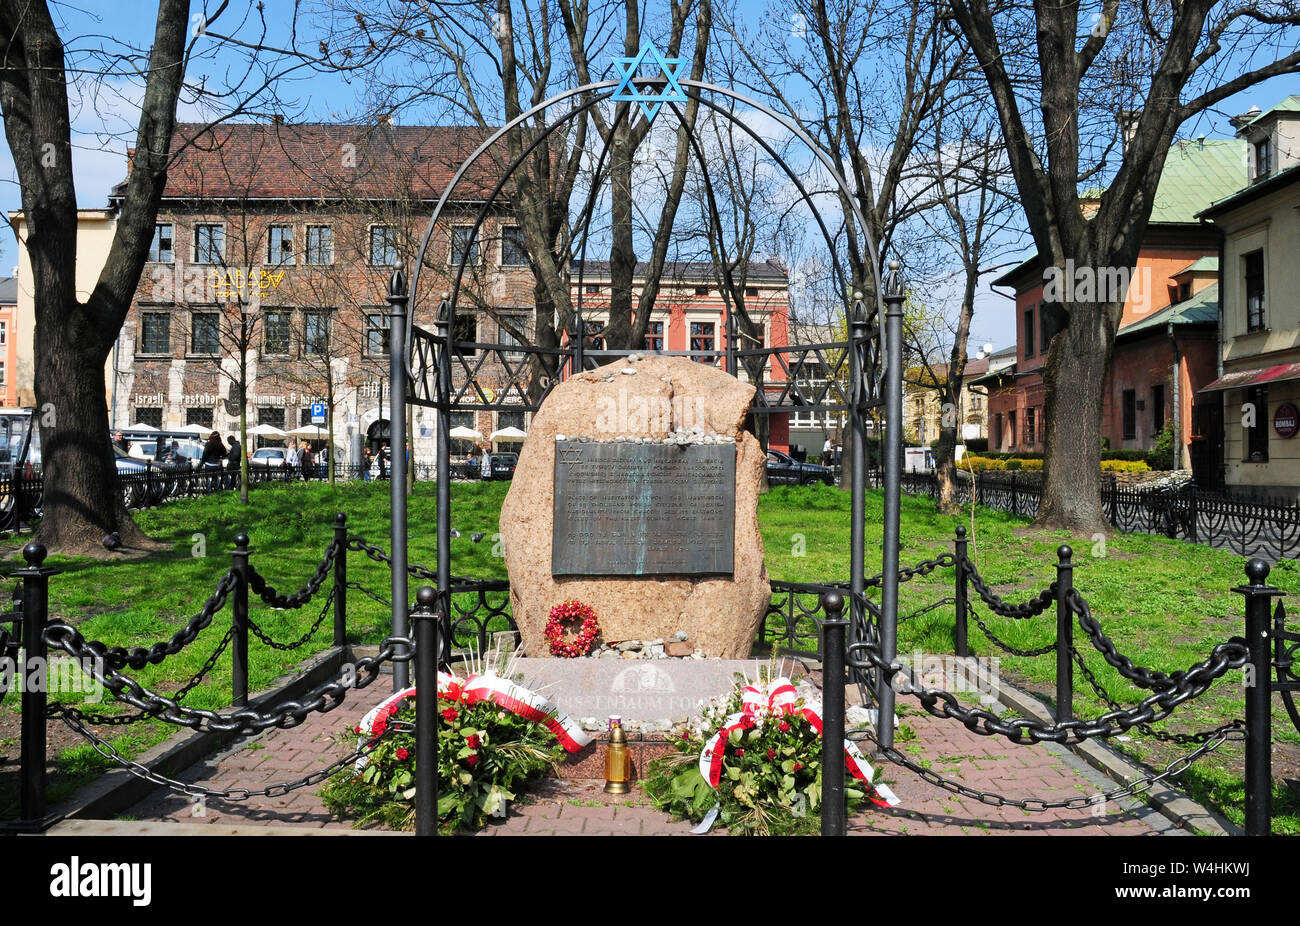 Ort der Meditation auf das Martyrium von 65 Tausend polnischen Juden aus Krakau im Zweiten Weltkrieg. Stockfoto